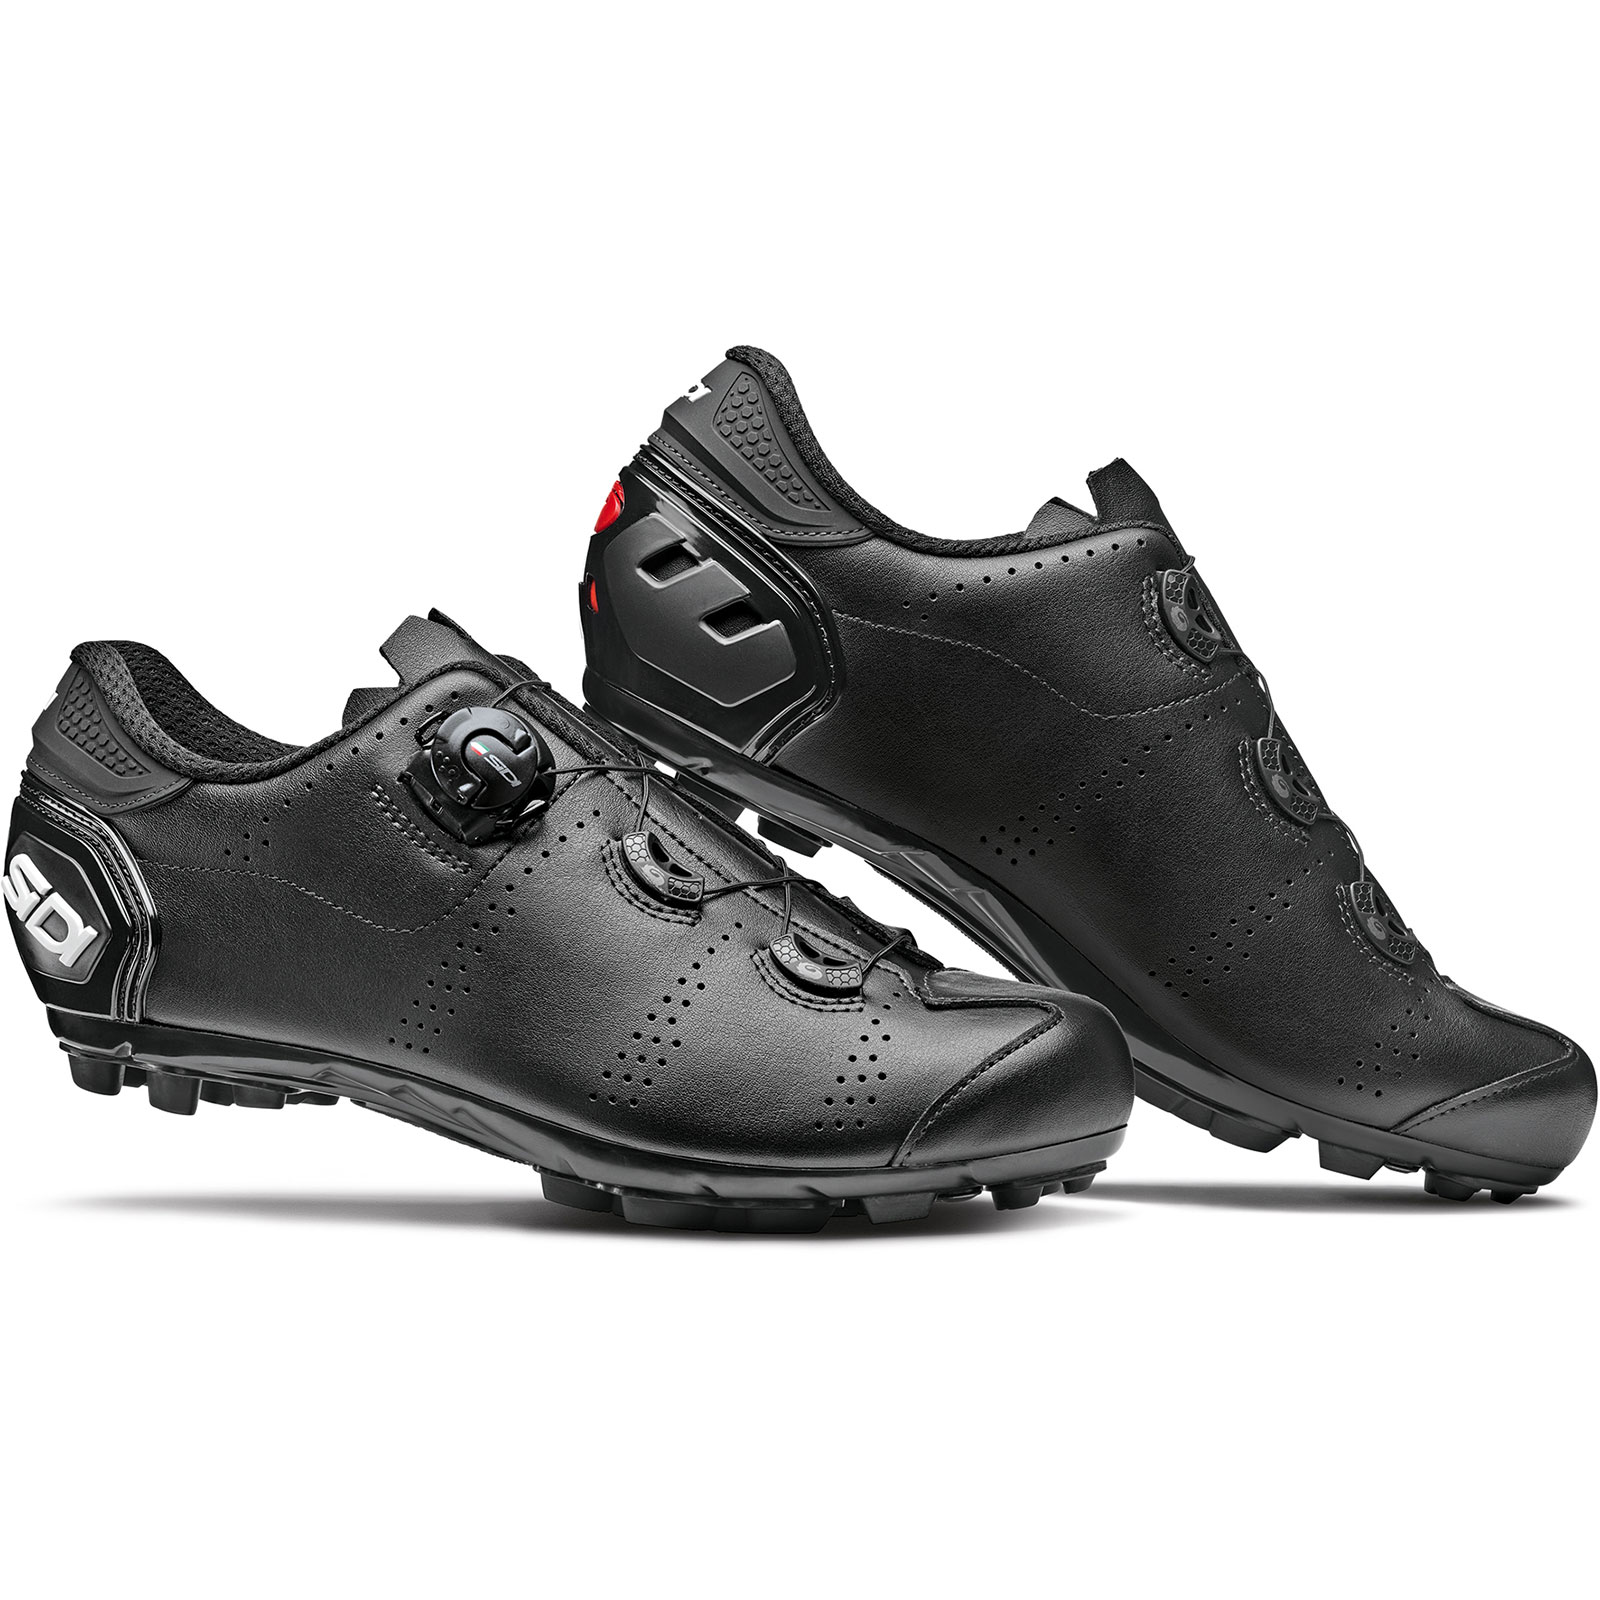 Produktbild von Sidi Speed MTB Schuhe - schwarz/schwarz